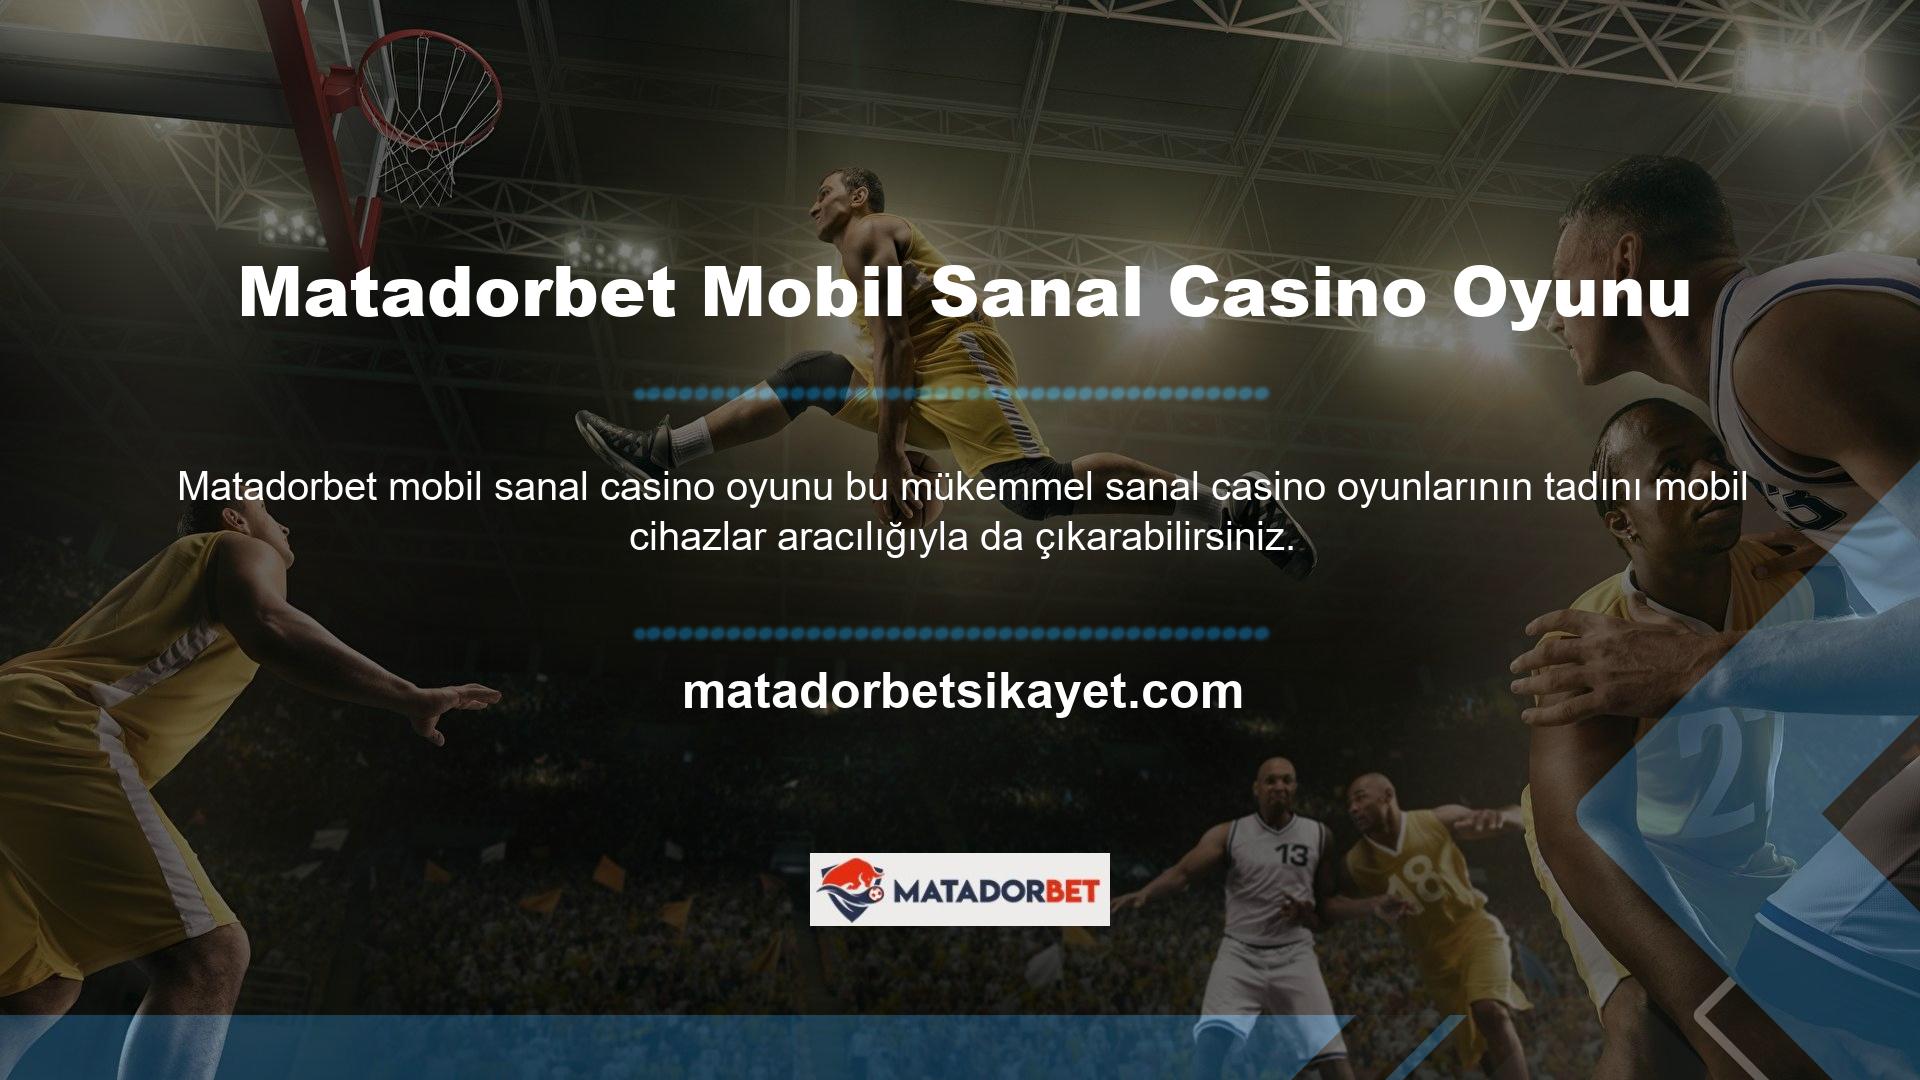 Matadorbet, sanal casino oyun platformunda mobil sistemin verimli kullanımını kolaylaştırır ve savunur